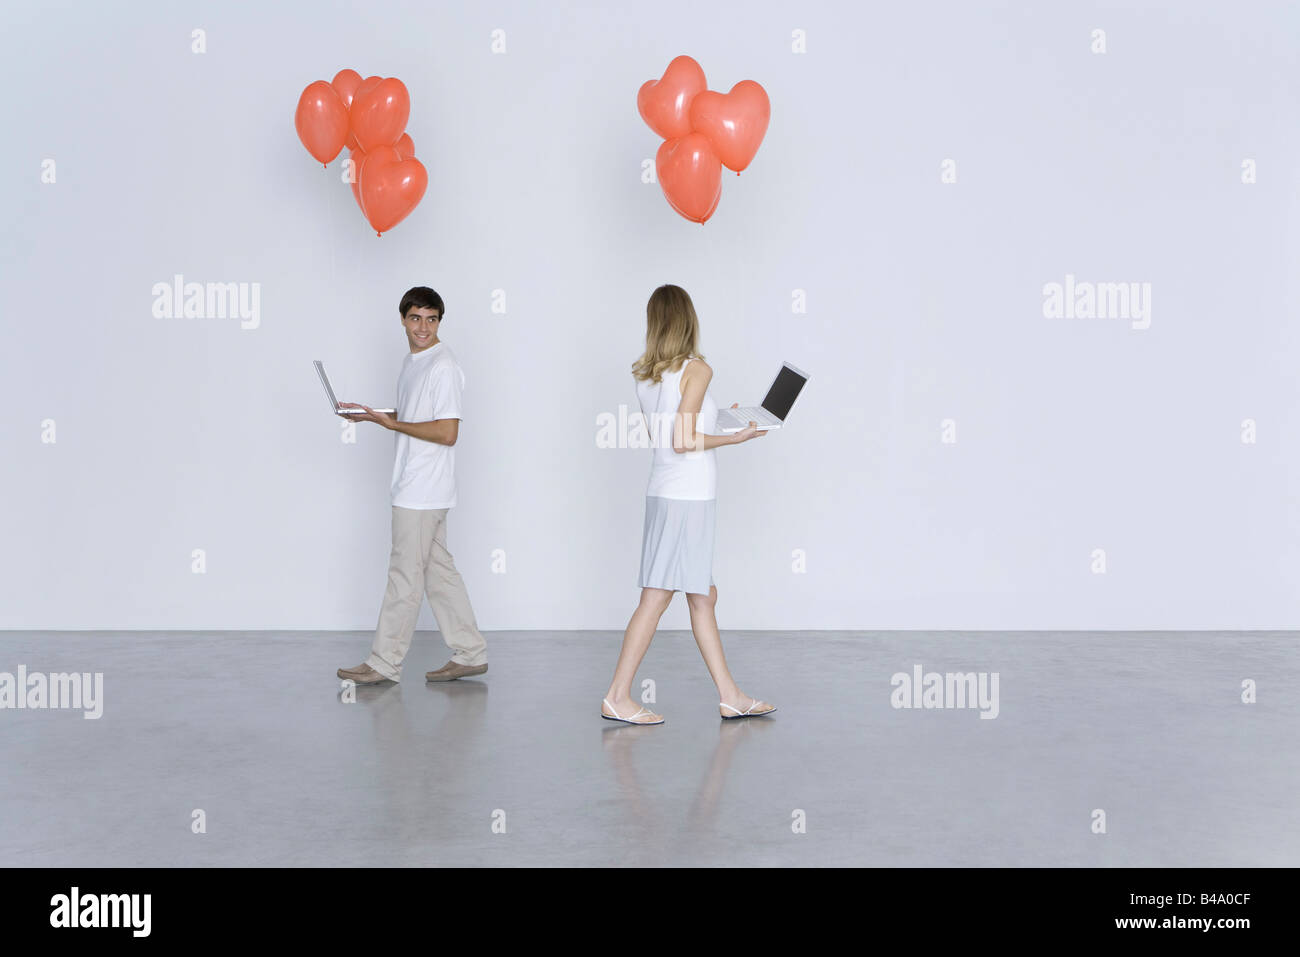 Mann und Frau zu Fuß vorbei an einander, mit Laptops und Herz Luftballons Stockfoto